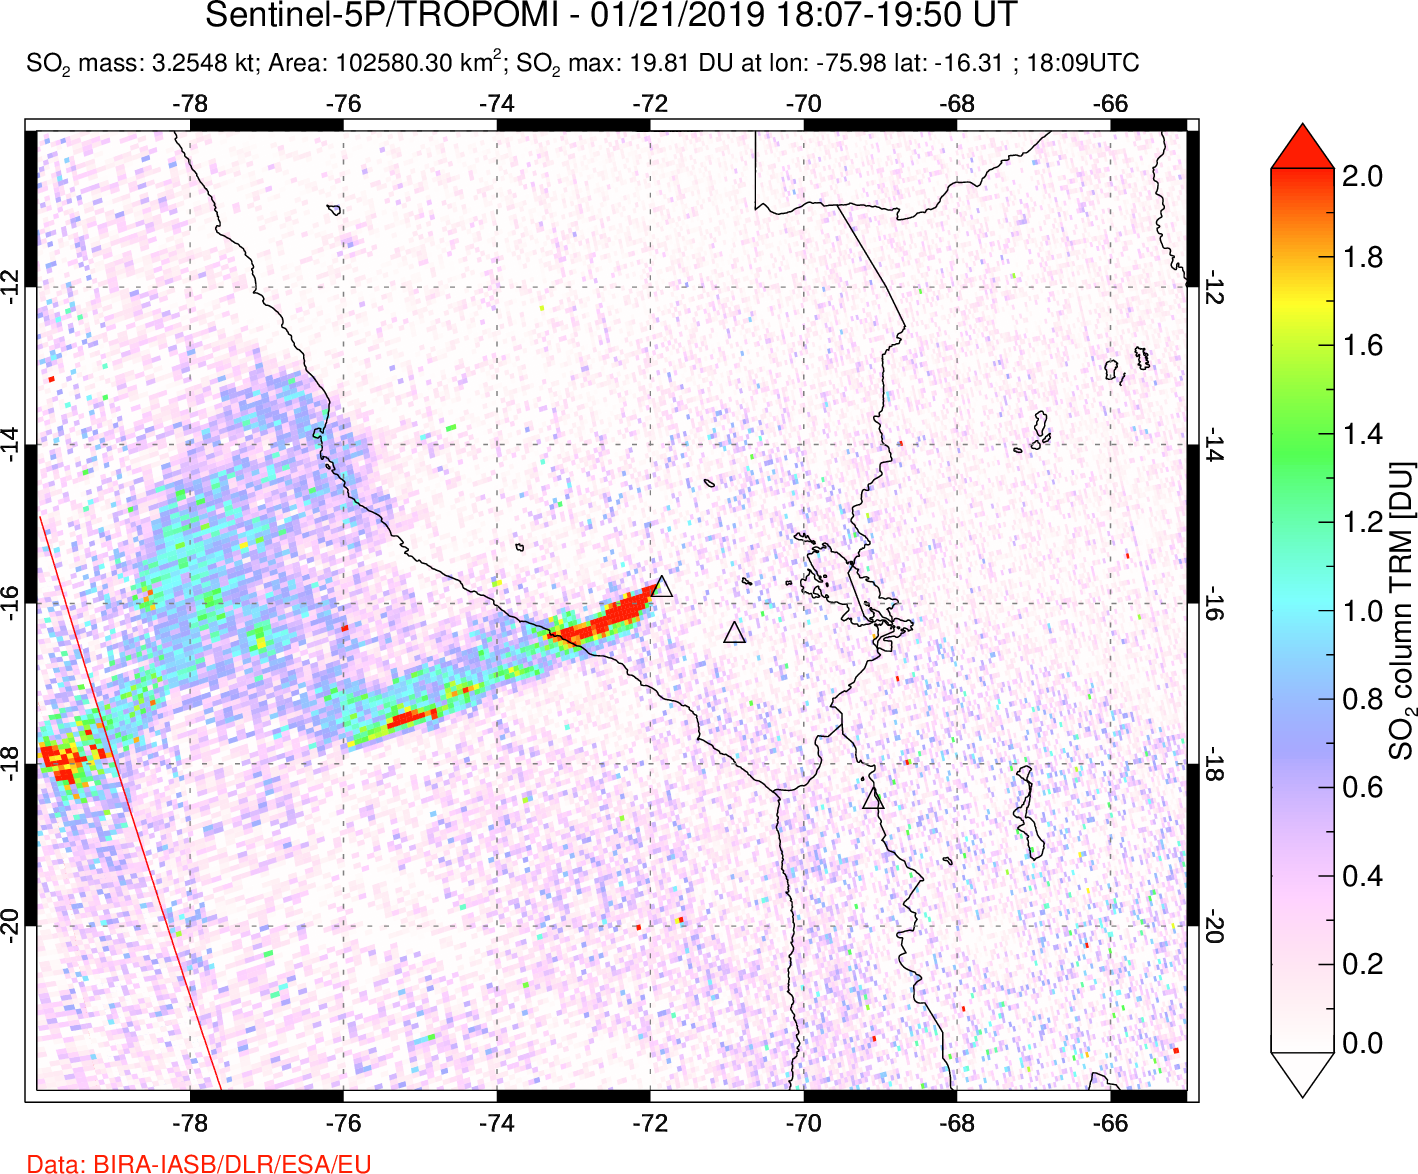 A sulfur dioxide image over Peru on Jan 21, 2019.